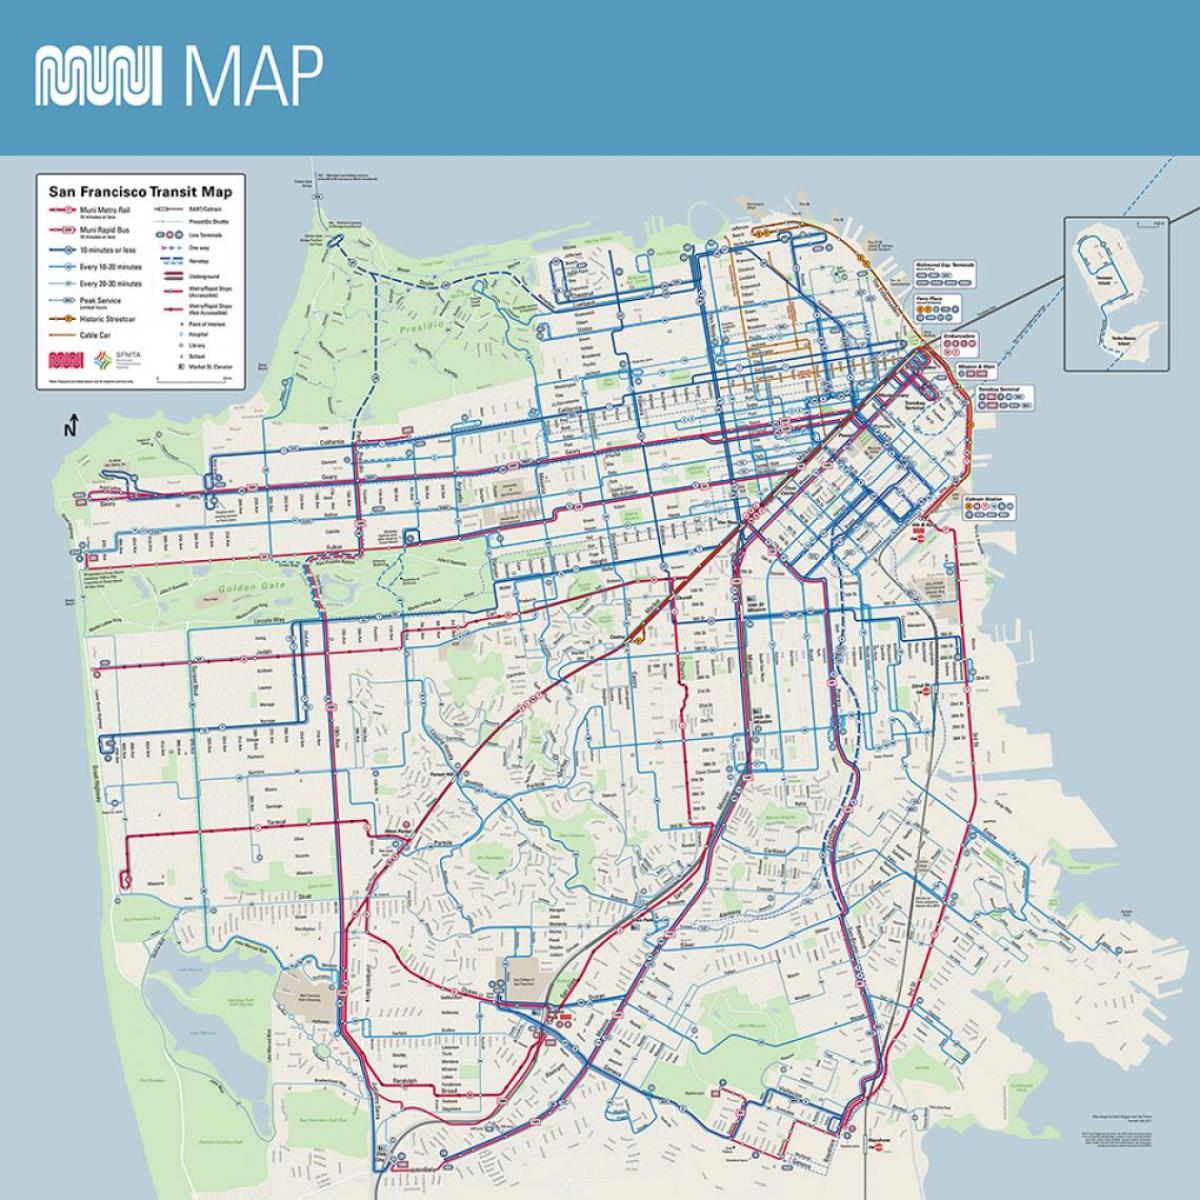 muni نقشہ سان فرانسسکو ca